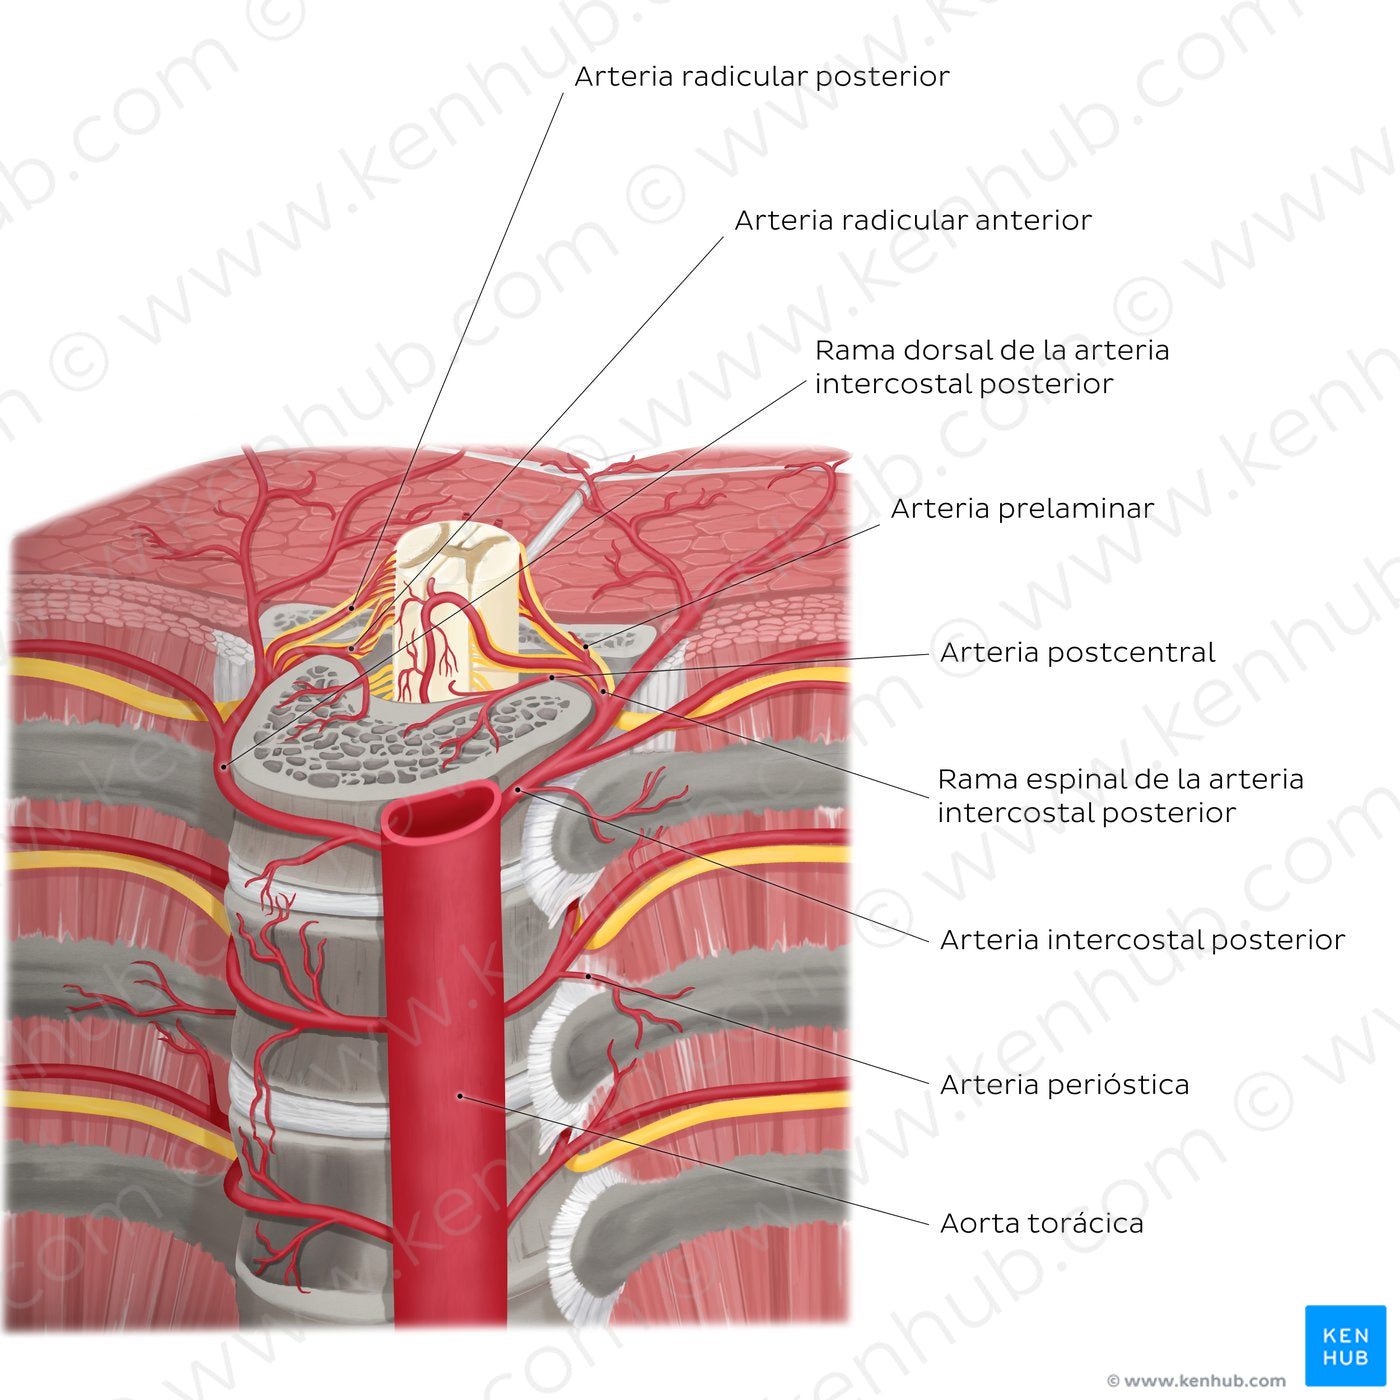 Arteries of the vertebral column (Spanish)